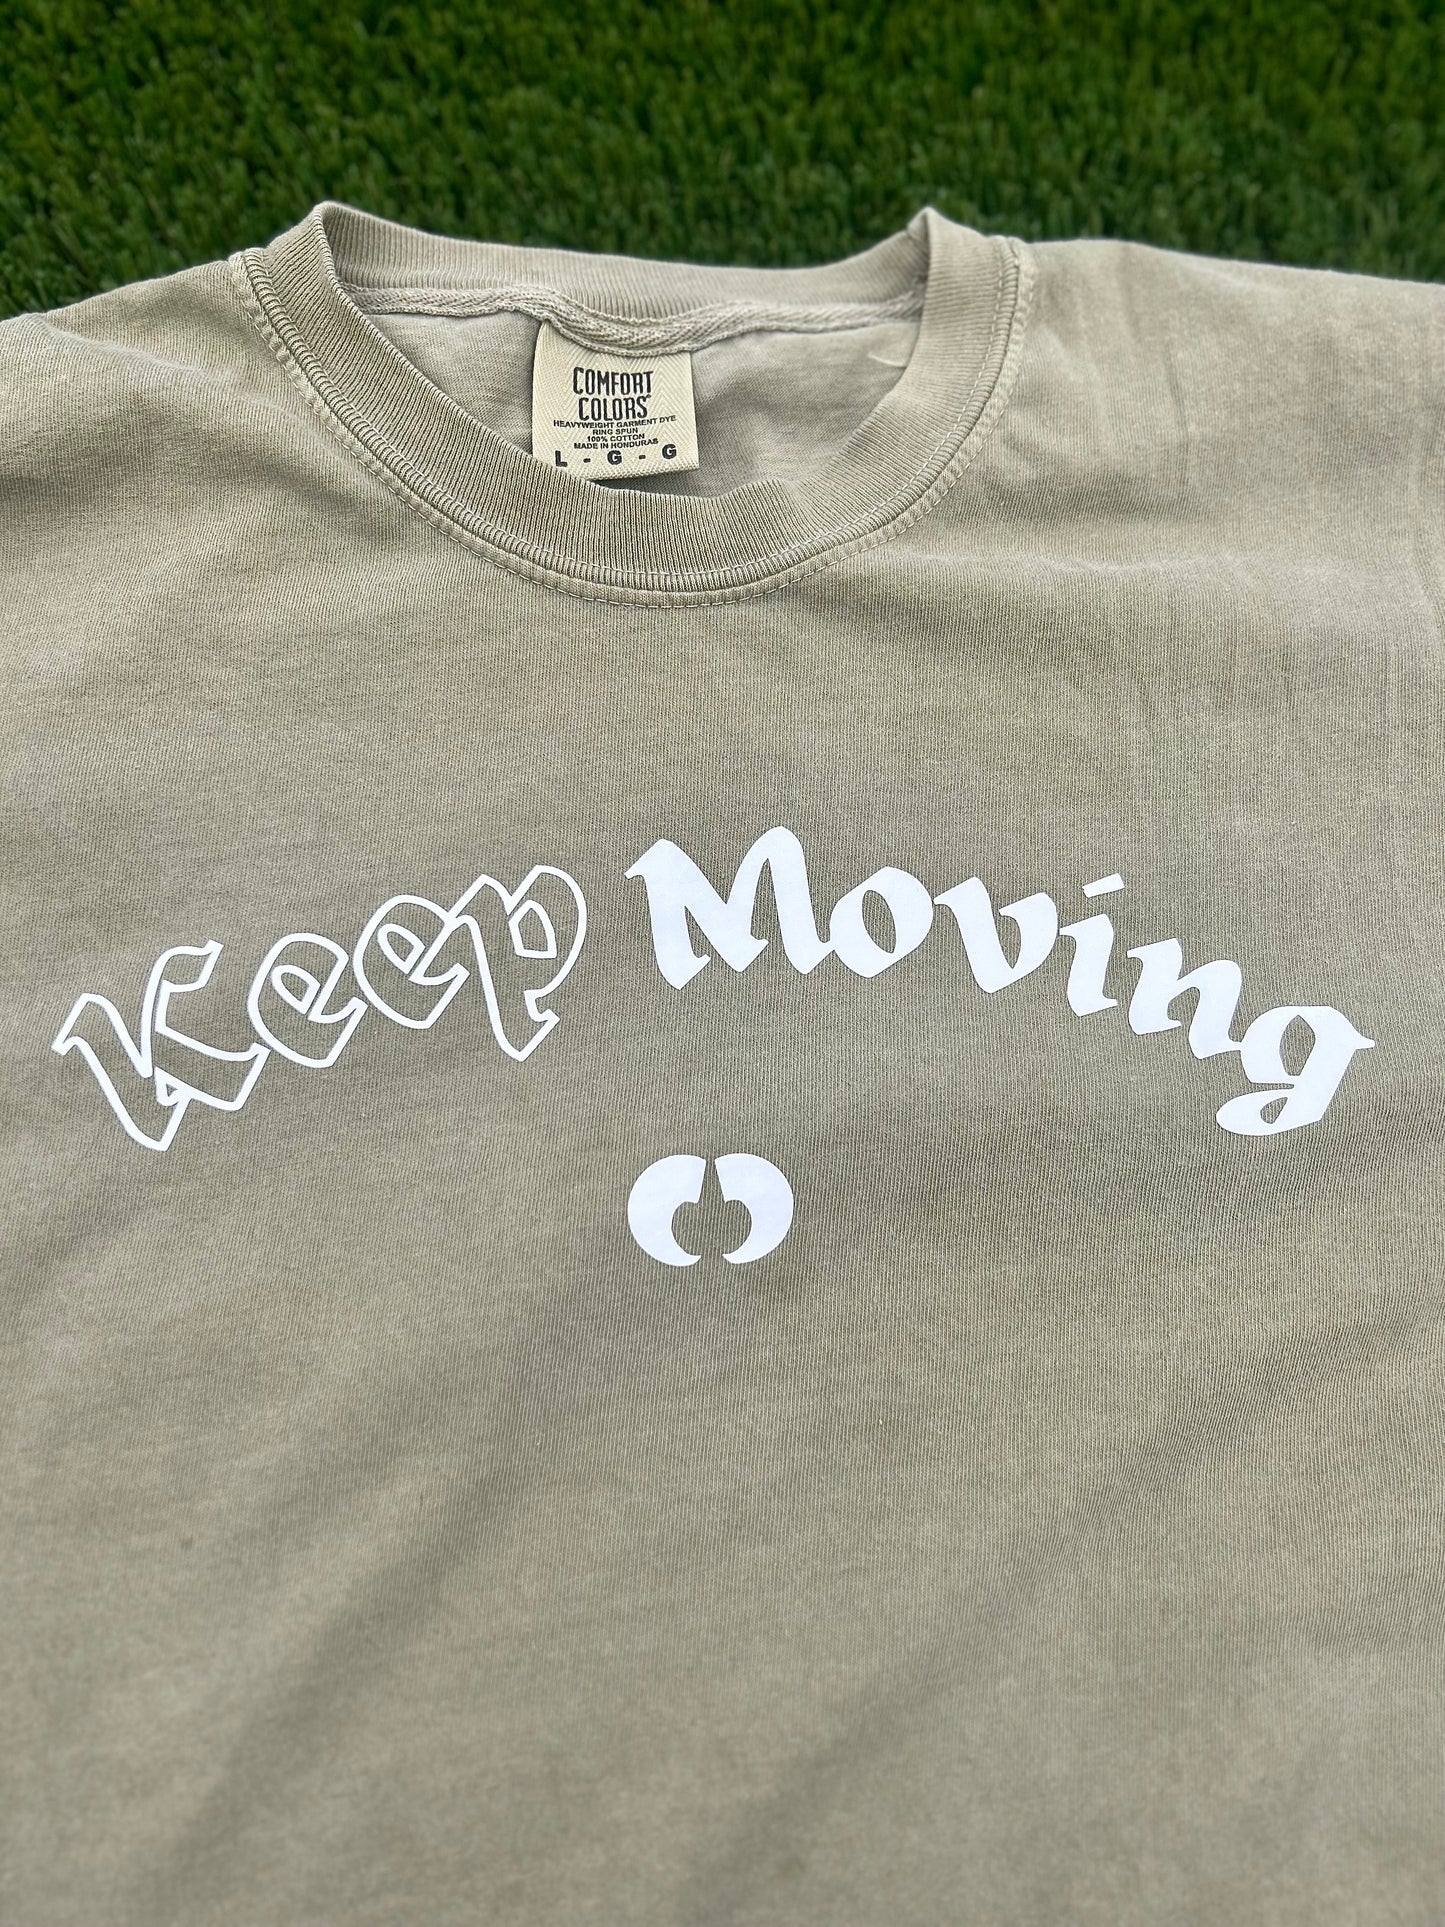 Keep Moving Kakhi/Black T-Shirt Unisex